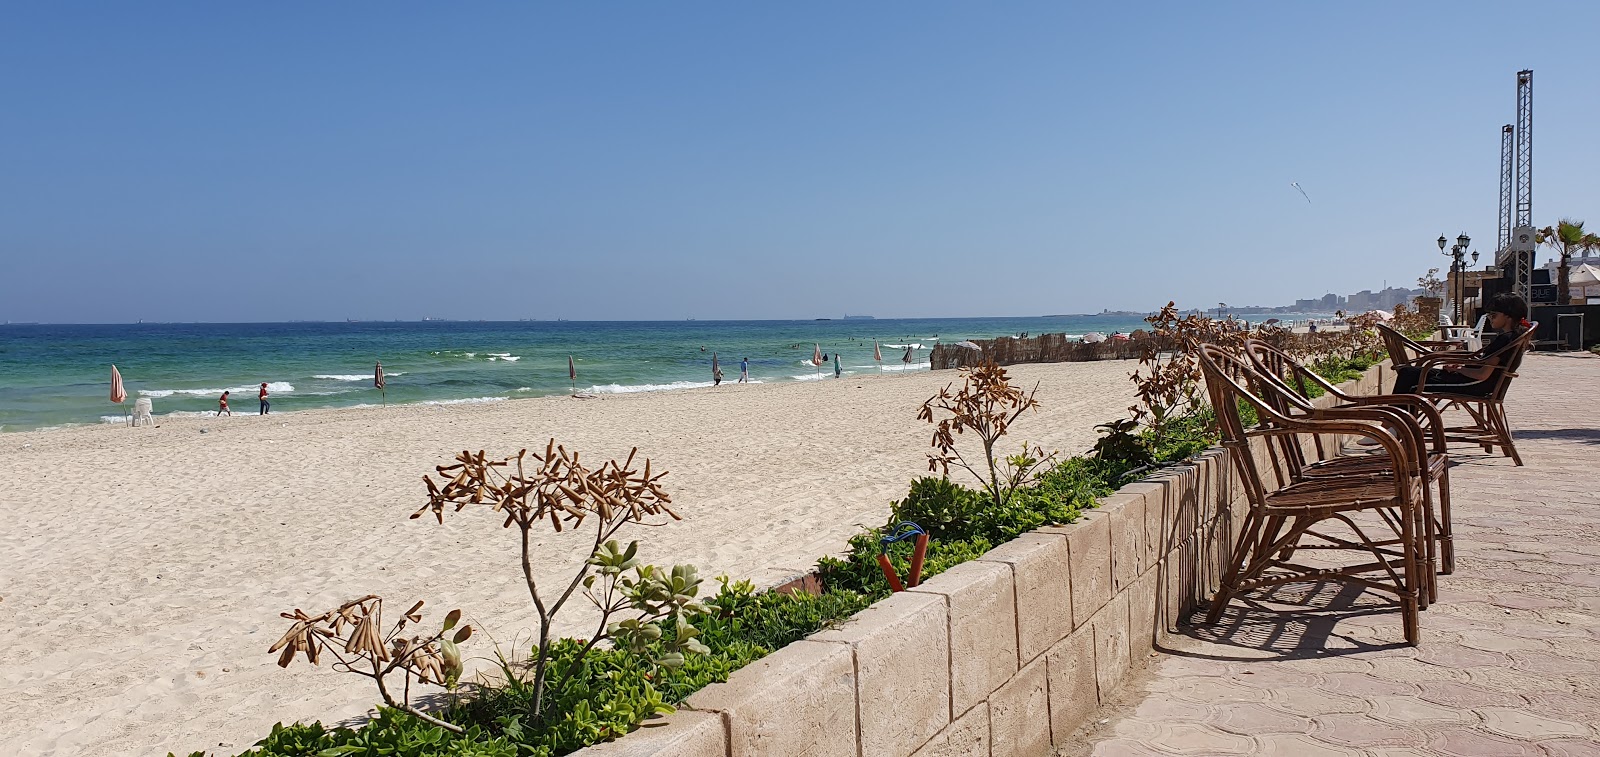 Al-Ajami Beach'in fotoğrafı - rahatlamayı sevenler arasında popüler bir yer